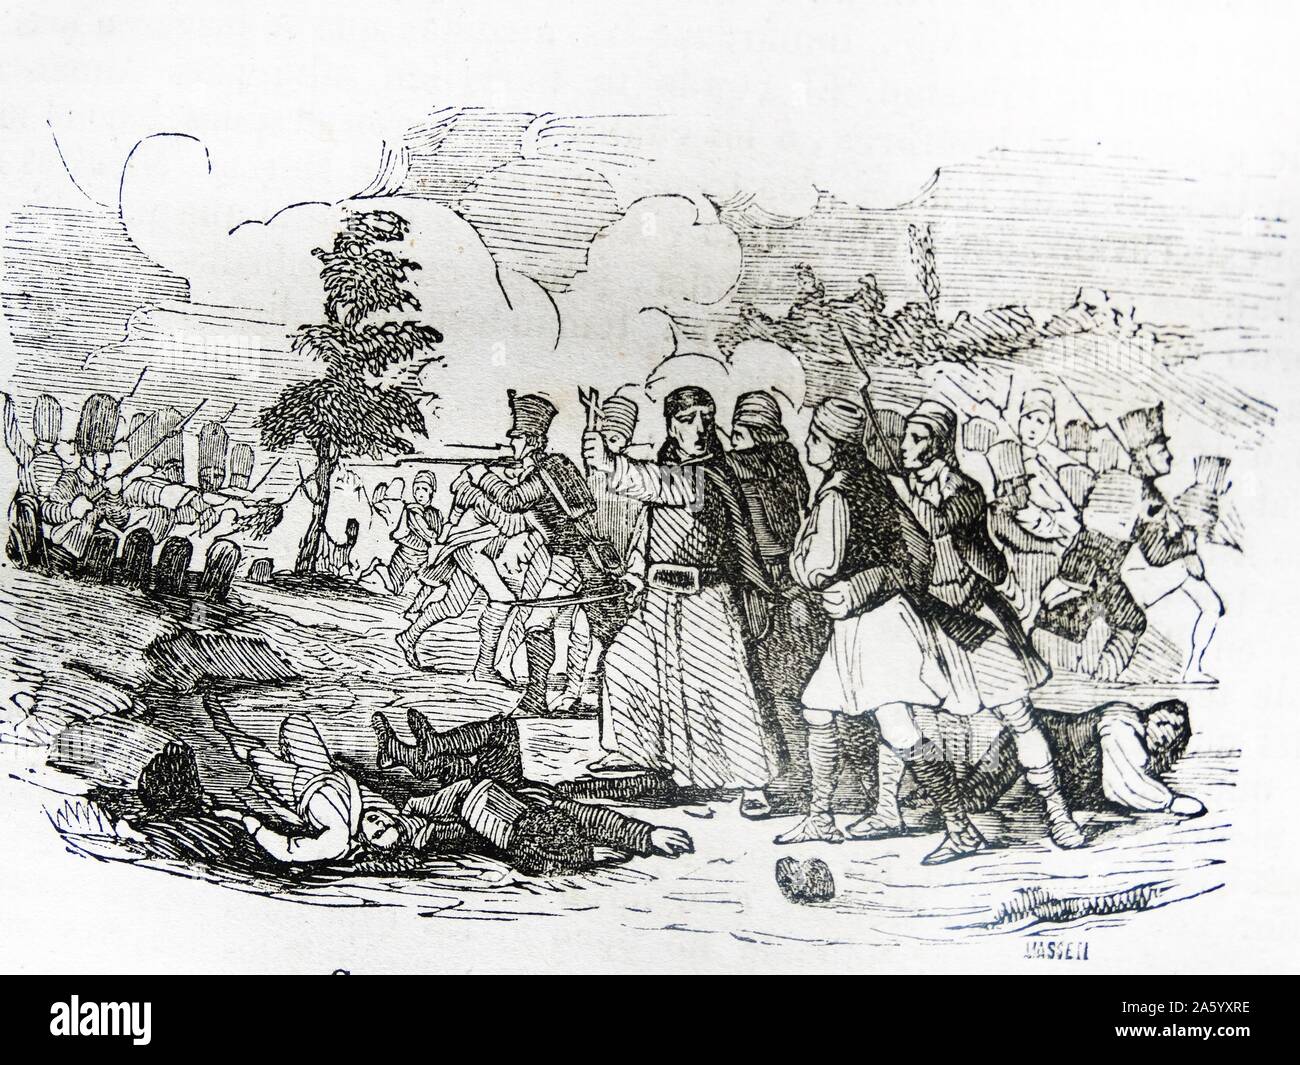 Gravure illustrant la bataille de Cabrillas, pendant la guerre d'Espagne. Datée 1808 Banque D'Images